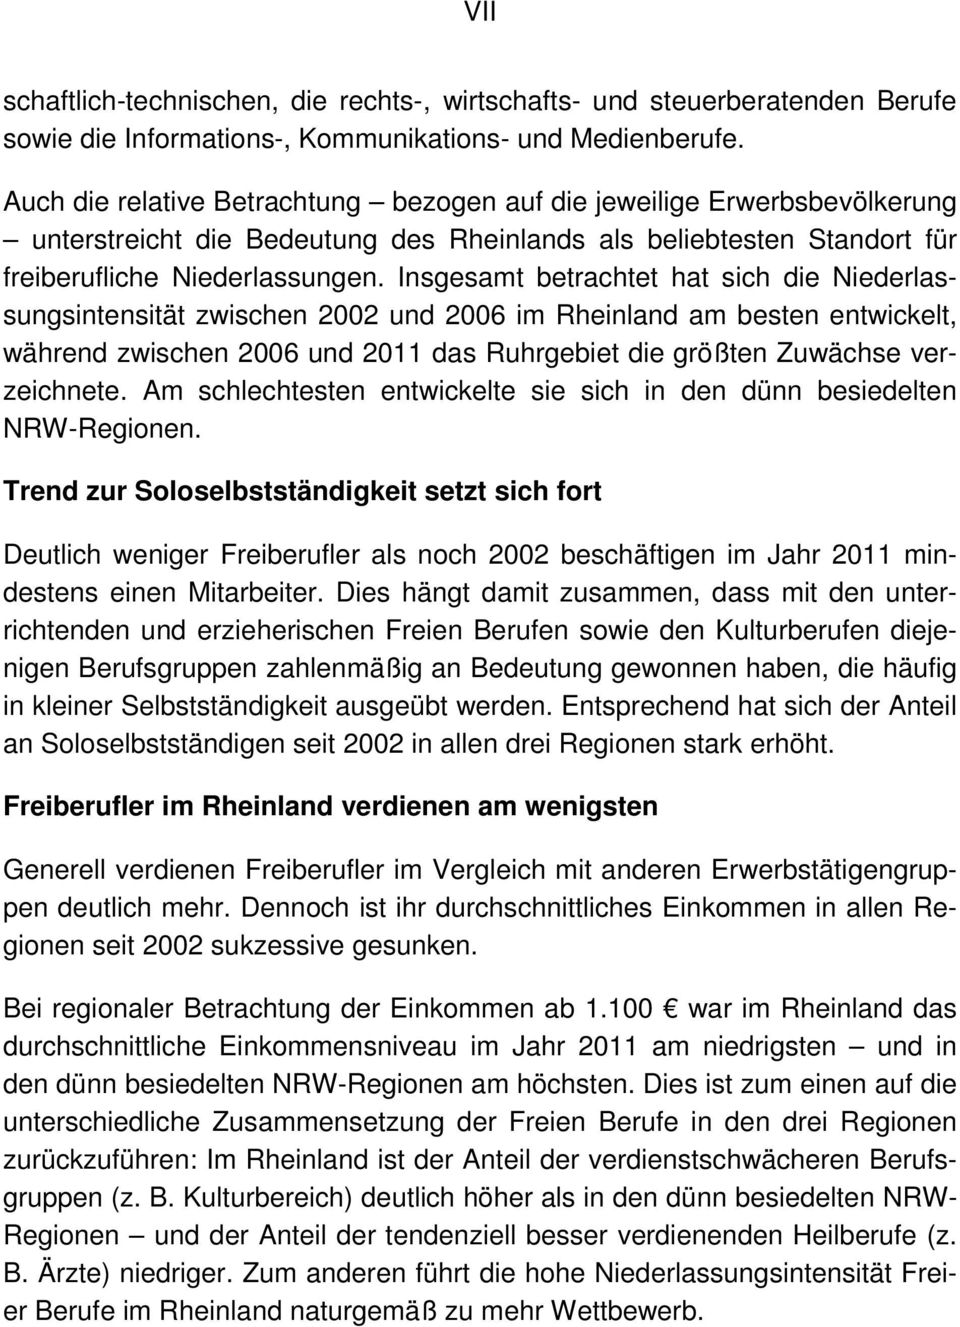 Insgesamt betrachtet hat sich die Niederlassungsintensität zwischen 2002 und 2006 im Rheinland am besten entwickelt, während zwischen 2006 und 2011 das Ruhrgebiet die größten Zuwächse verzeichnete.